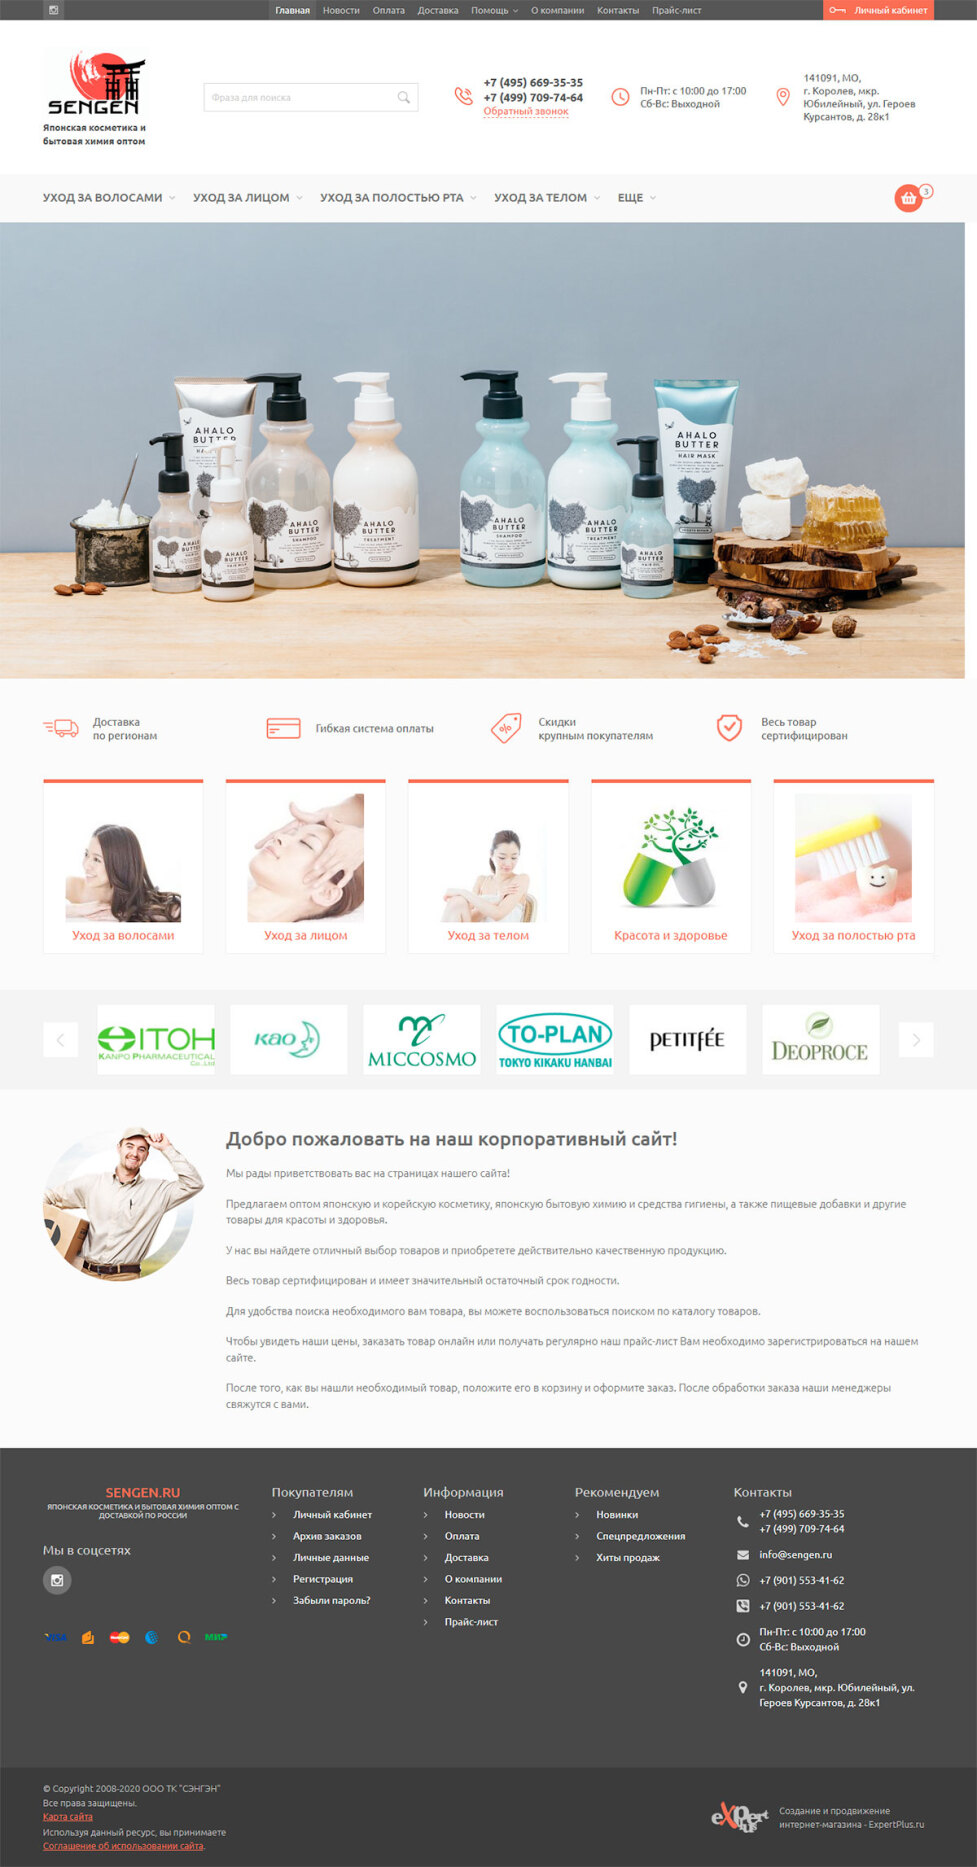 Интернет-магазин японской косметики и бытовой химии SENGEN (sengen.ru)